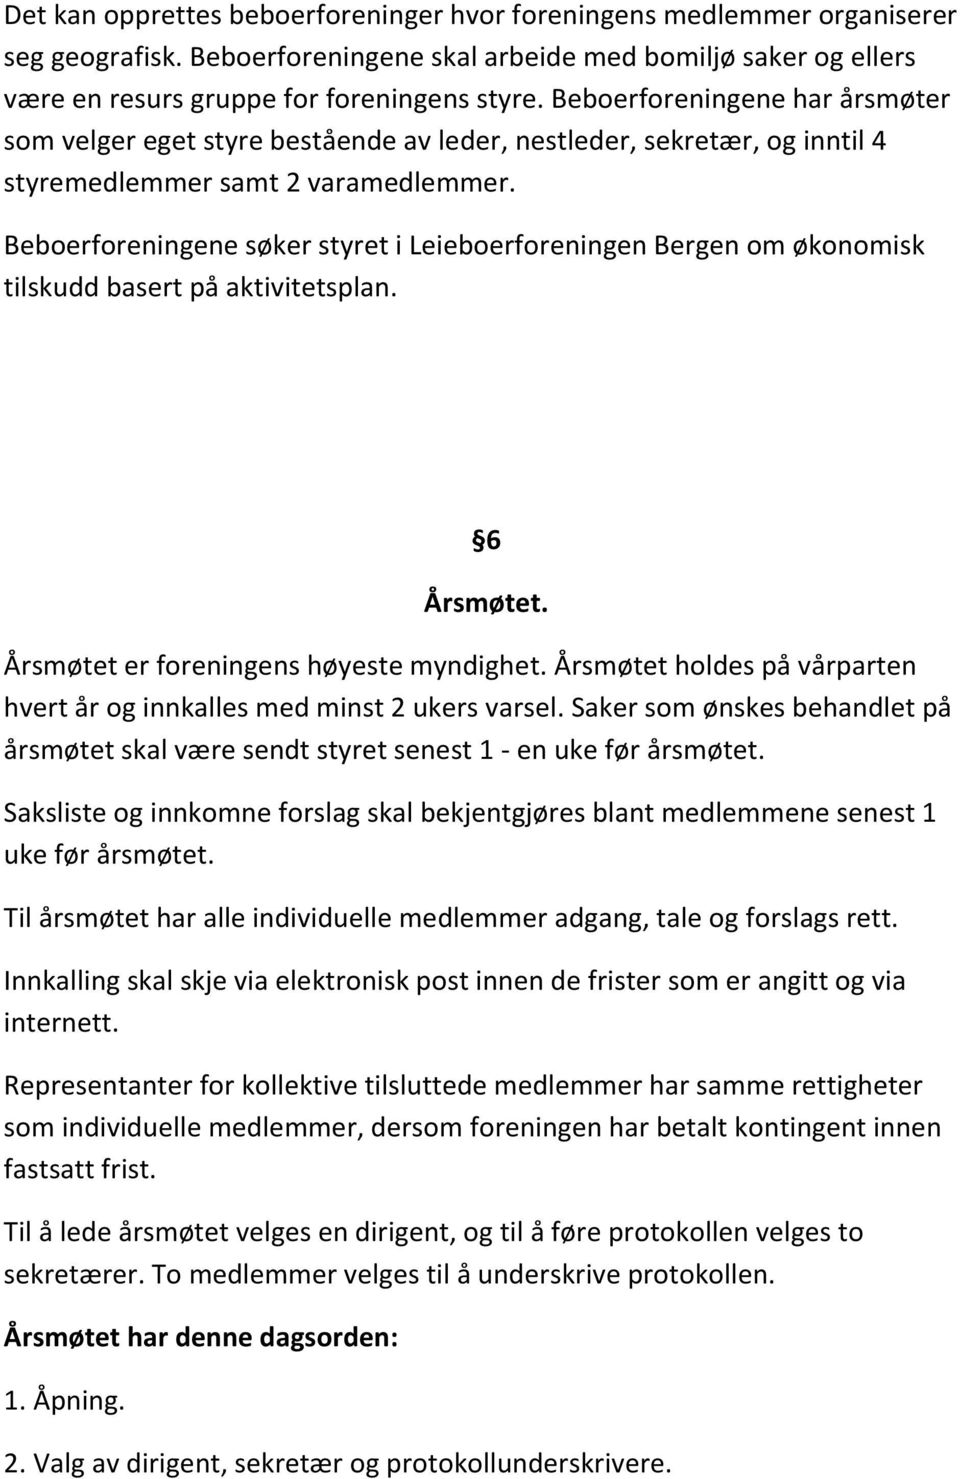 Beboerforeningene søker styret i Leieboerforeningen Bergen om økonomisk tilskudd basert på aktivitetsplan. 6 Årsmøtet. Årsmøtet er foreningens høyeste myndighet.